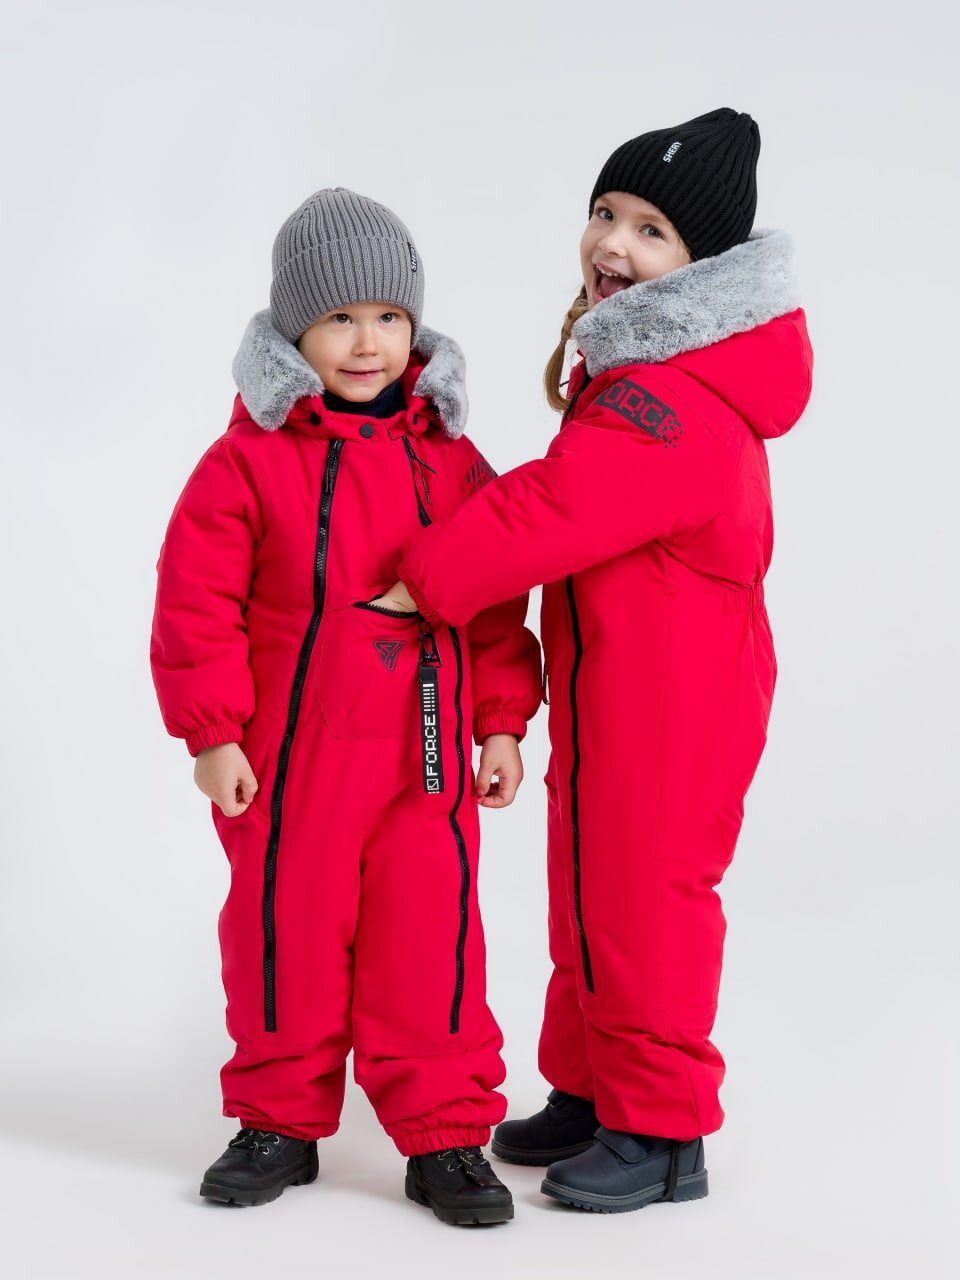 Юлия и Михаил Шерышевы (Sherysheff): «Наша цель – расширить ассортимент, чтобы одевать детей полностью в наш бренд»